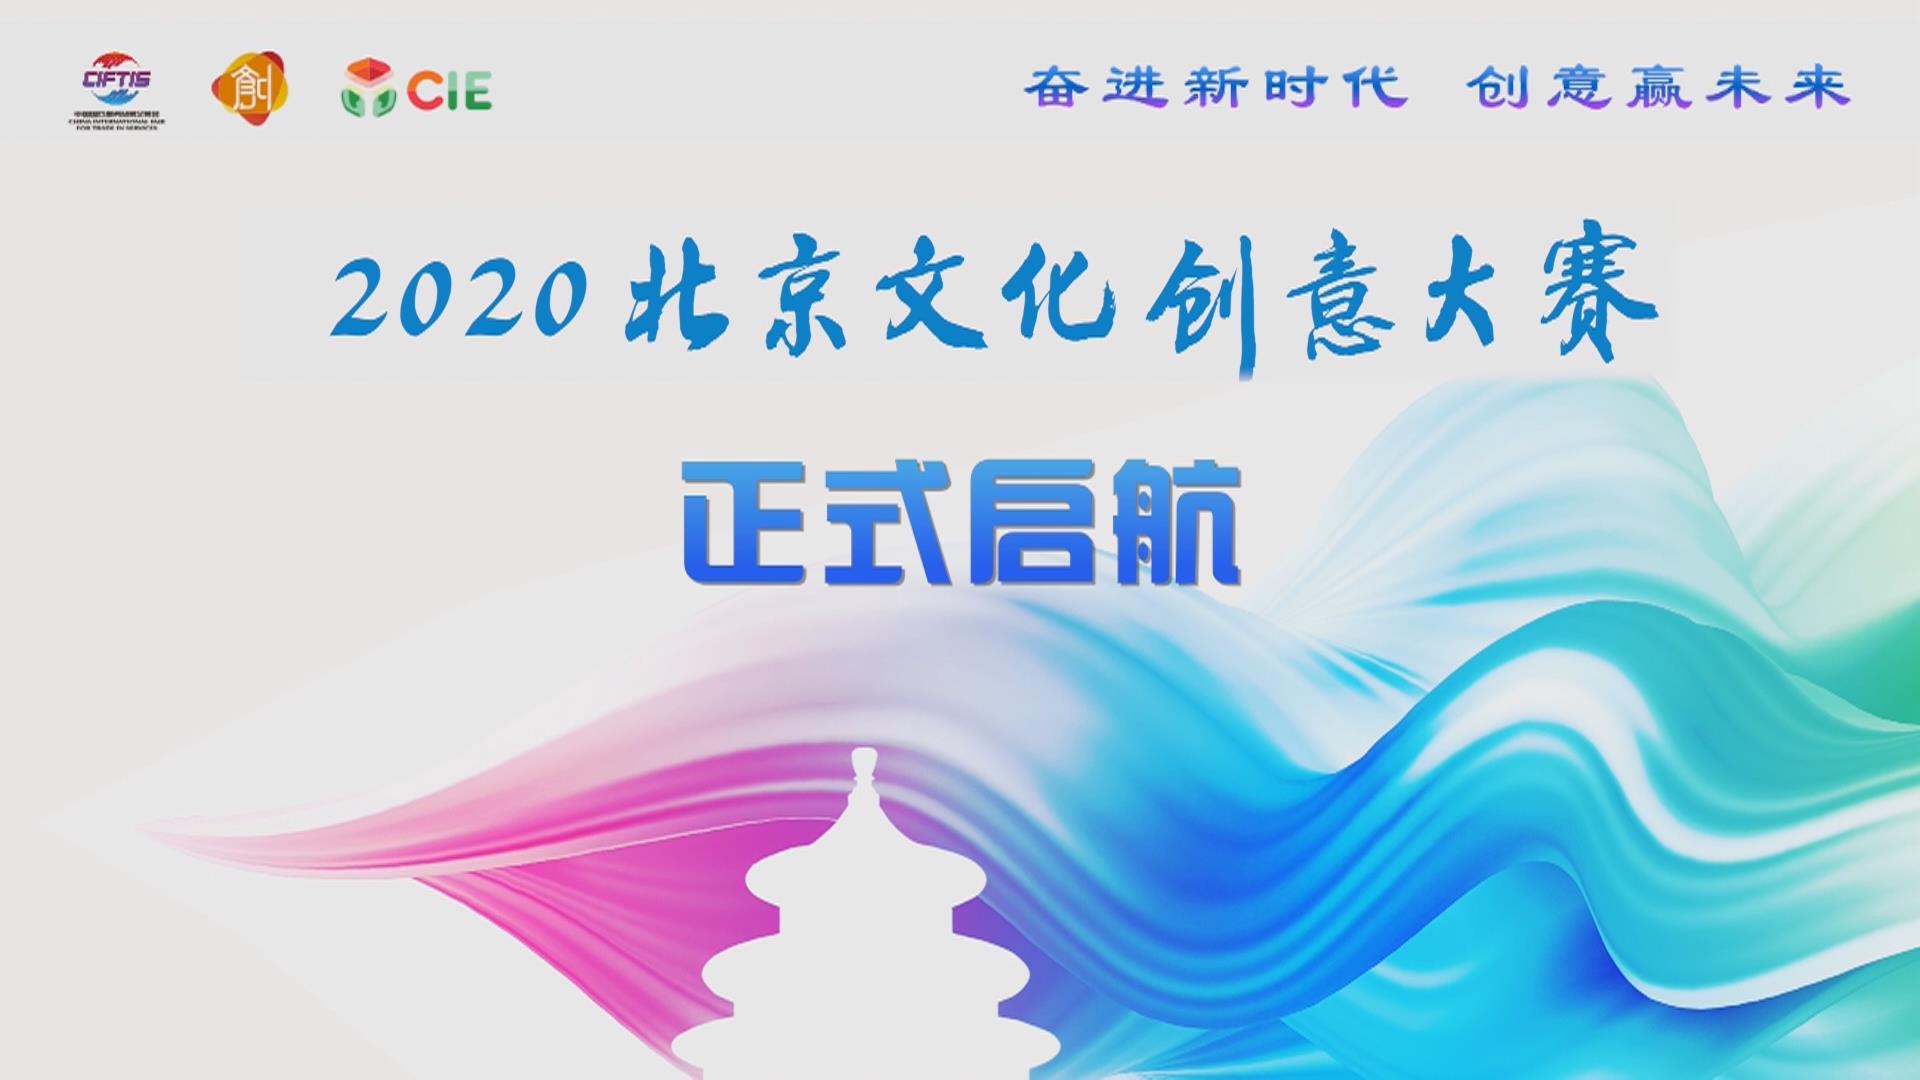 奋进新时代 创意赢未来 2020北京文创大赛再出发